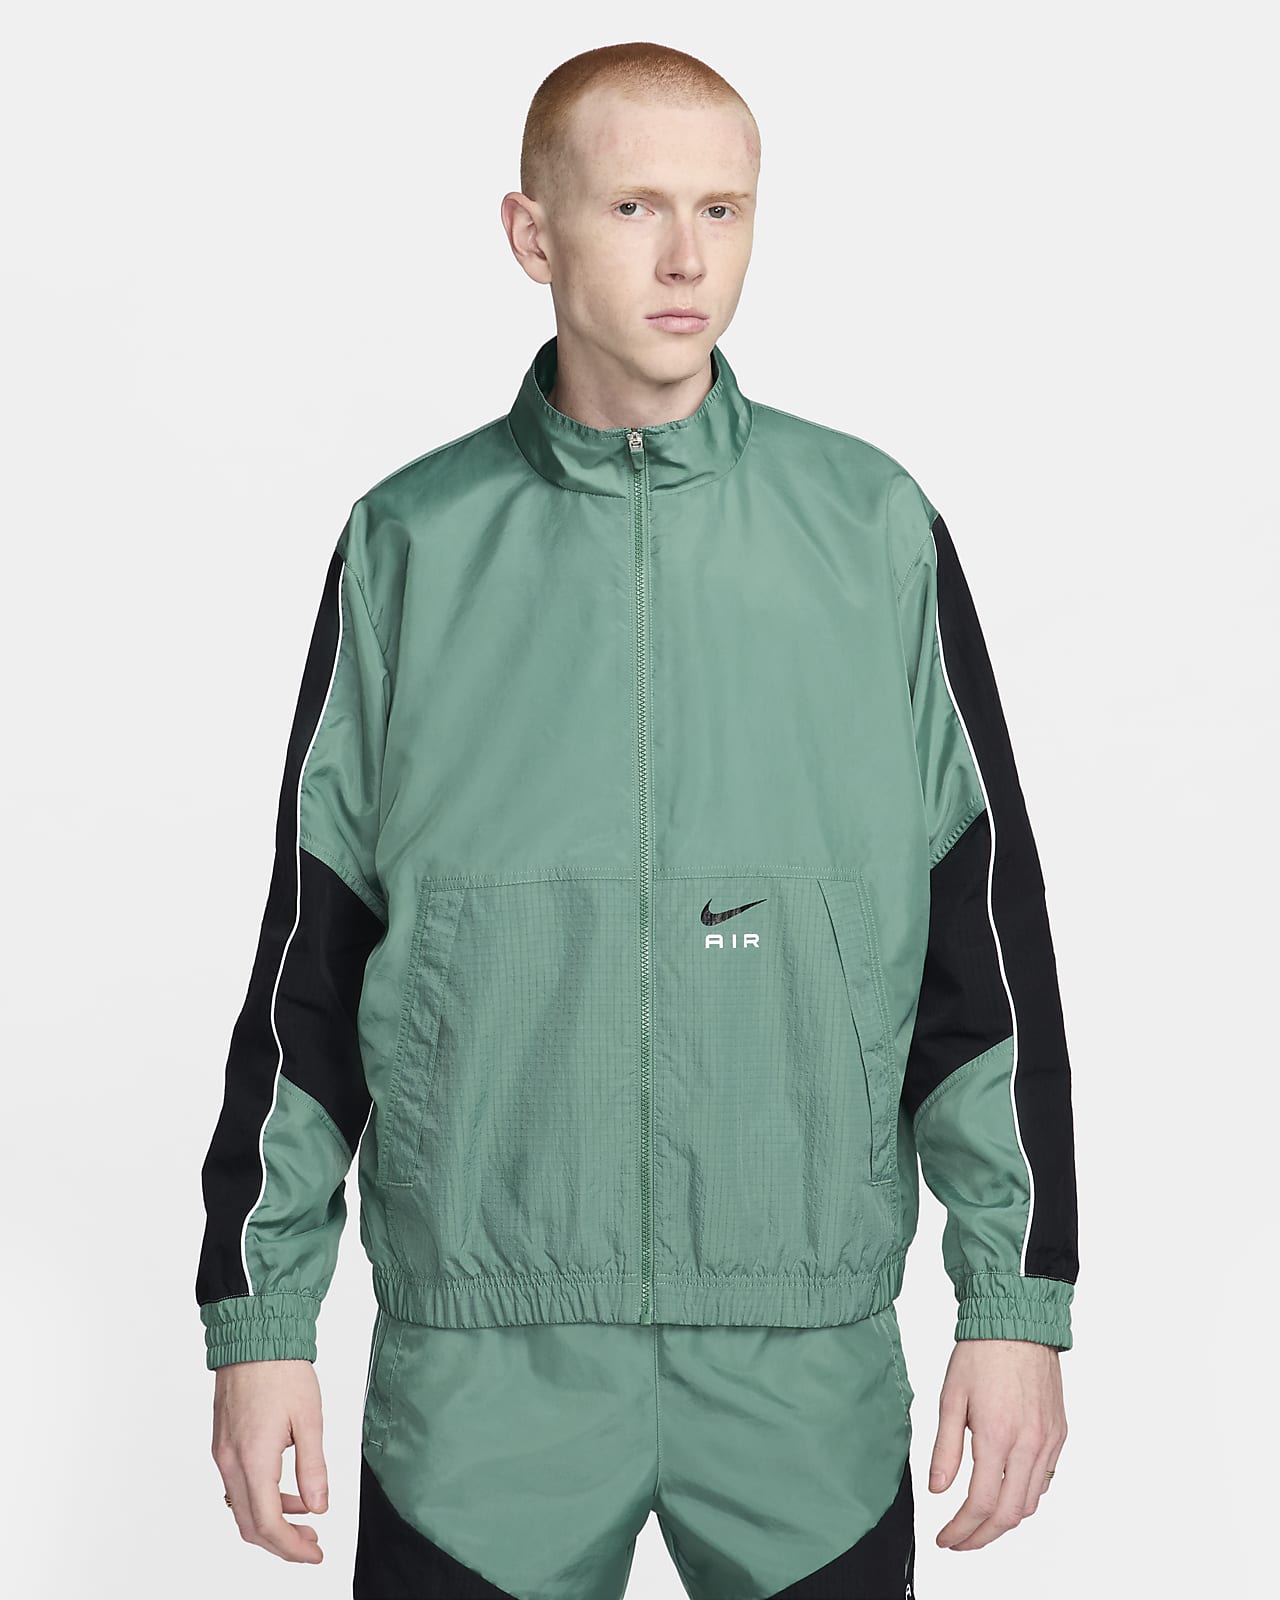 Track jacket in tessuto Nike Air – Uomo